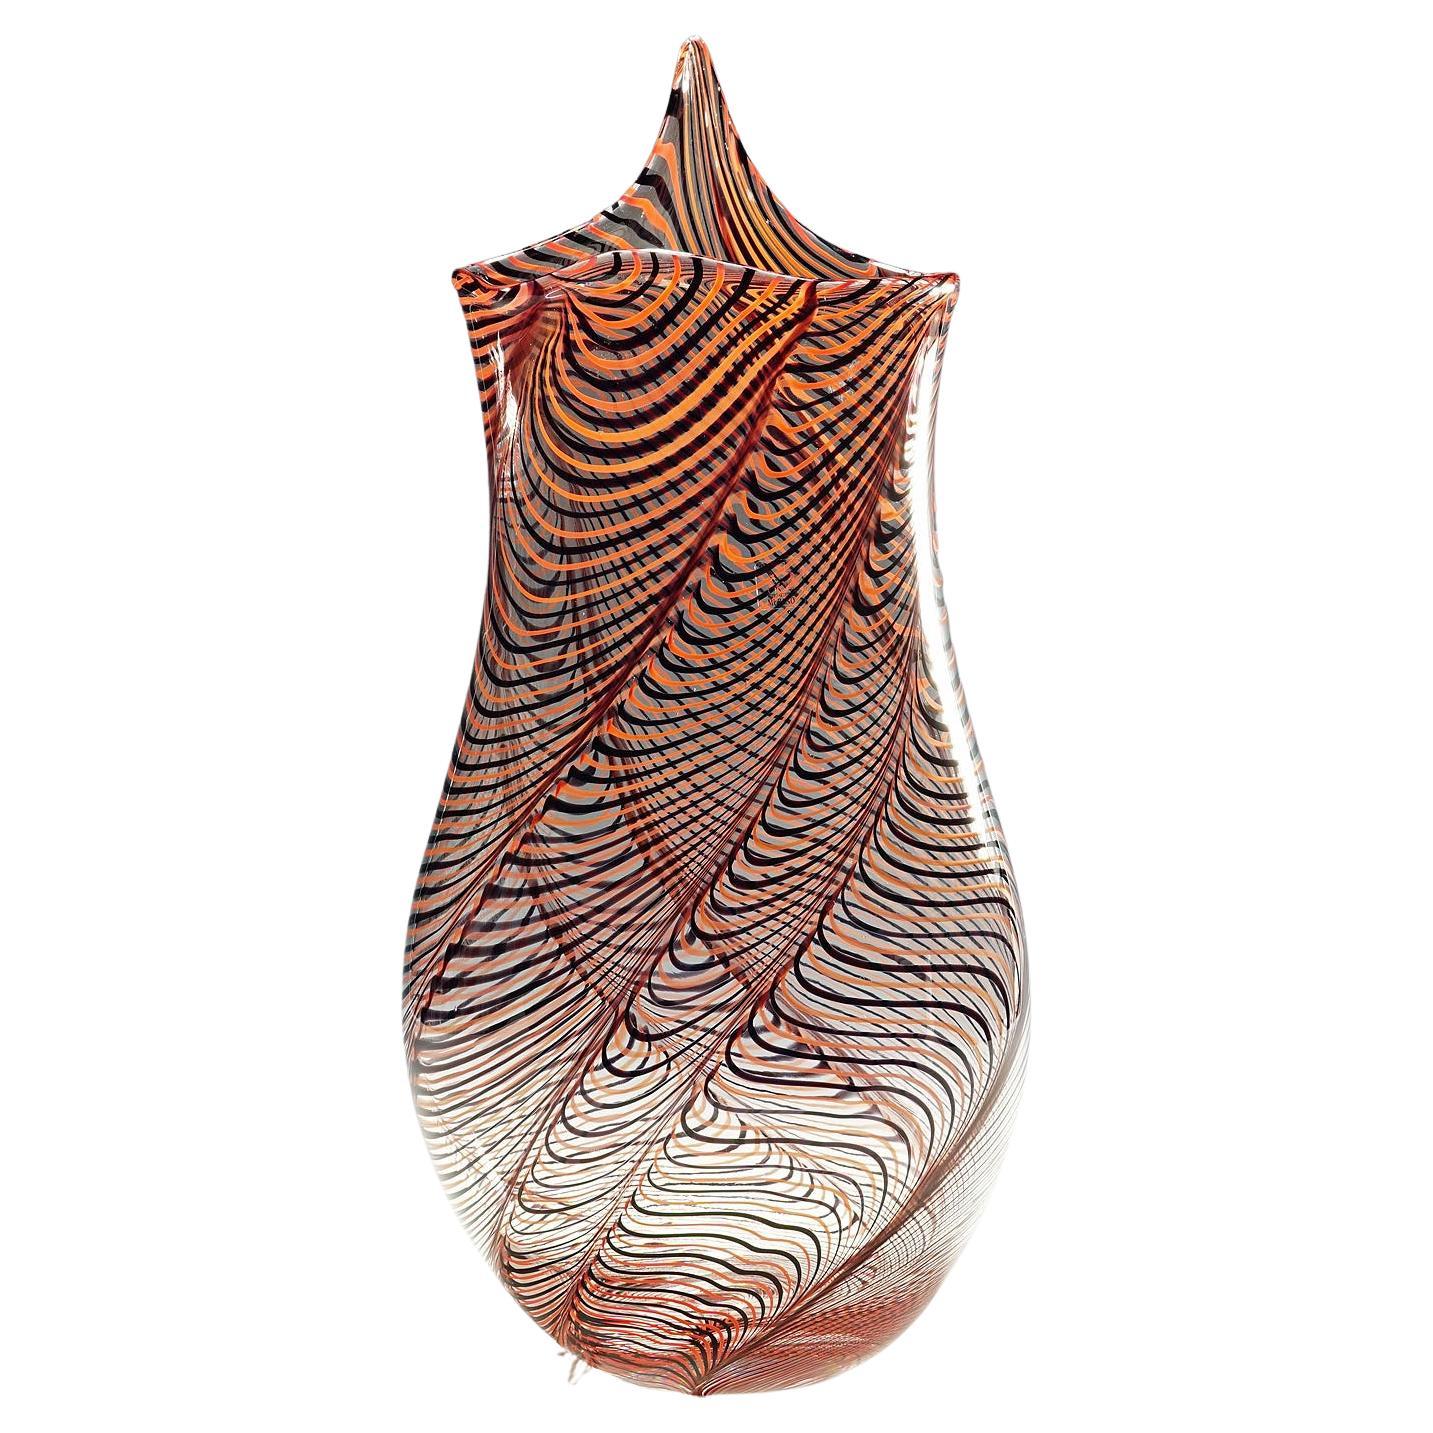 Large Art Glass Vase by Luca Vidal, Murano